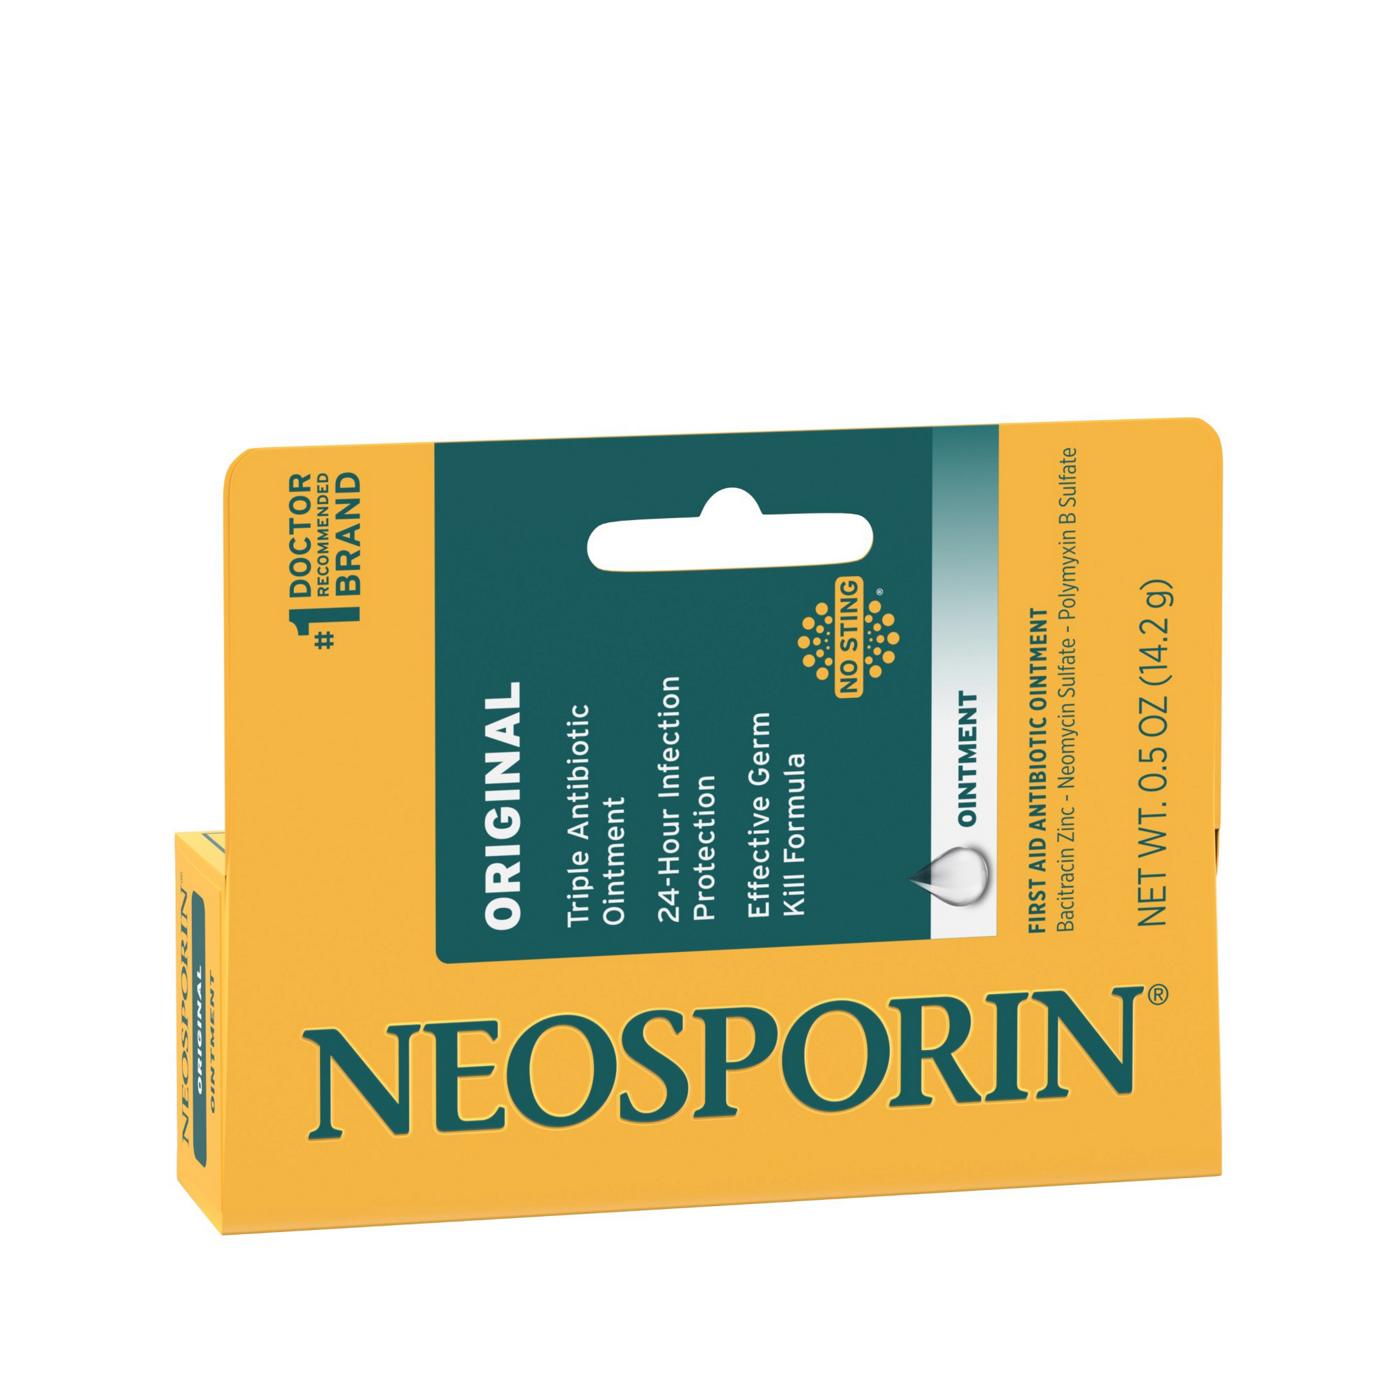 Neosporin Original Antibiotic Ointment; image 6 of 7